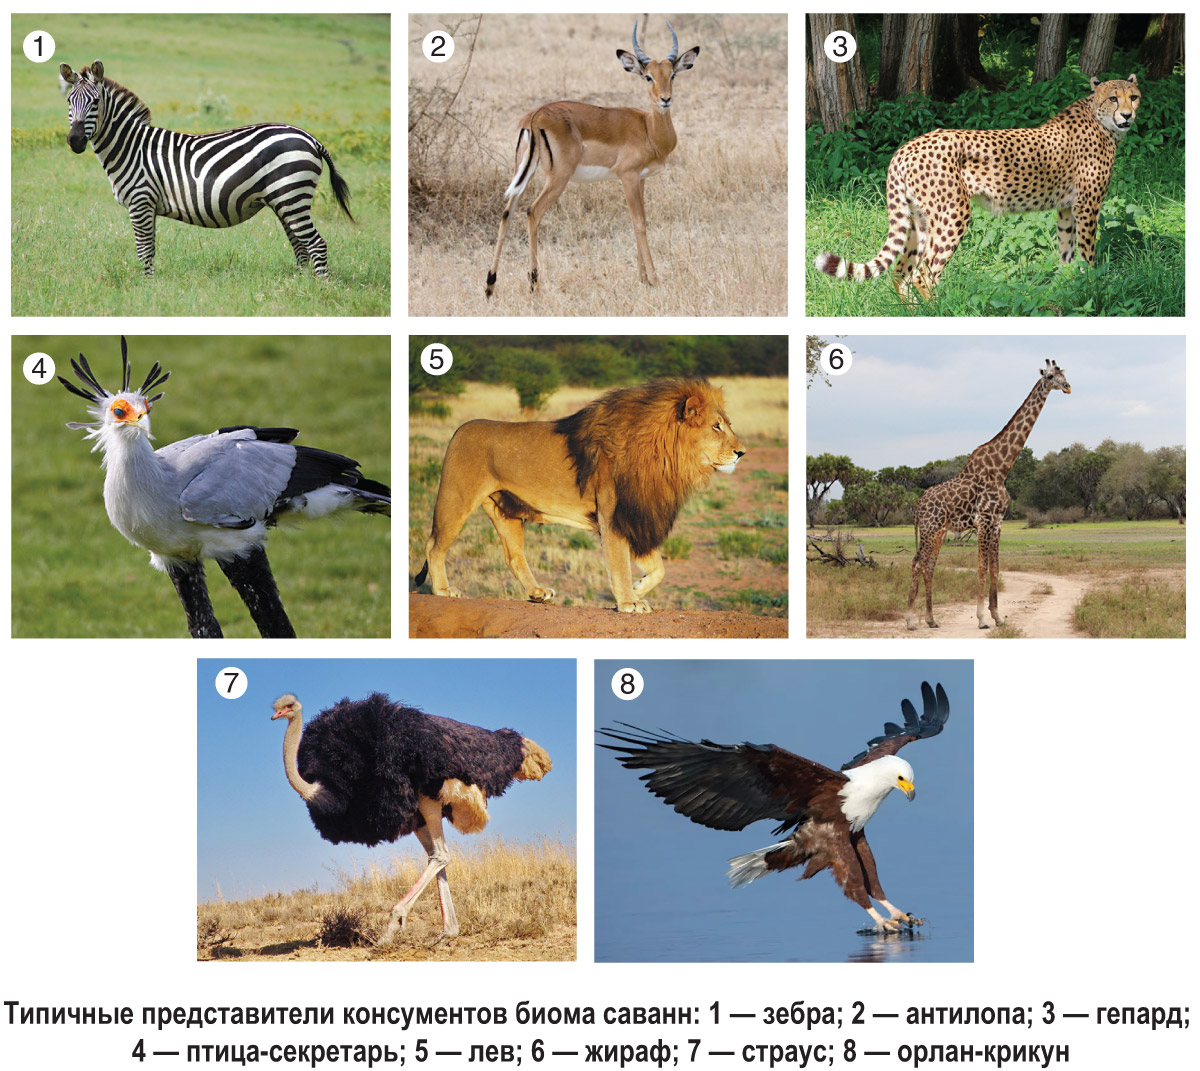 Какие животные живут в ЮАР? Животный мир (фауна) Южной Африки на Сафари-Занзибари